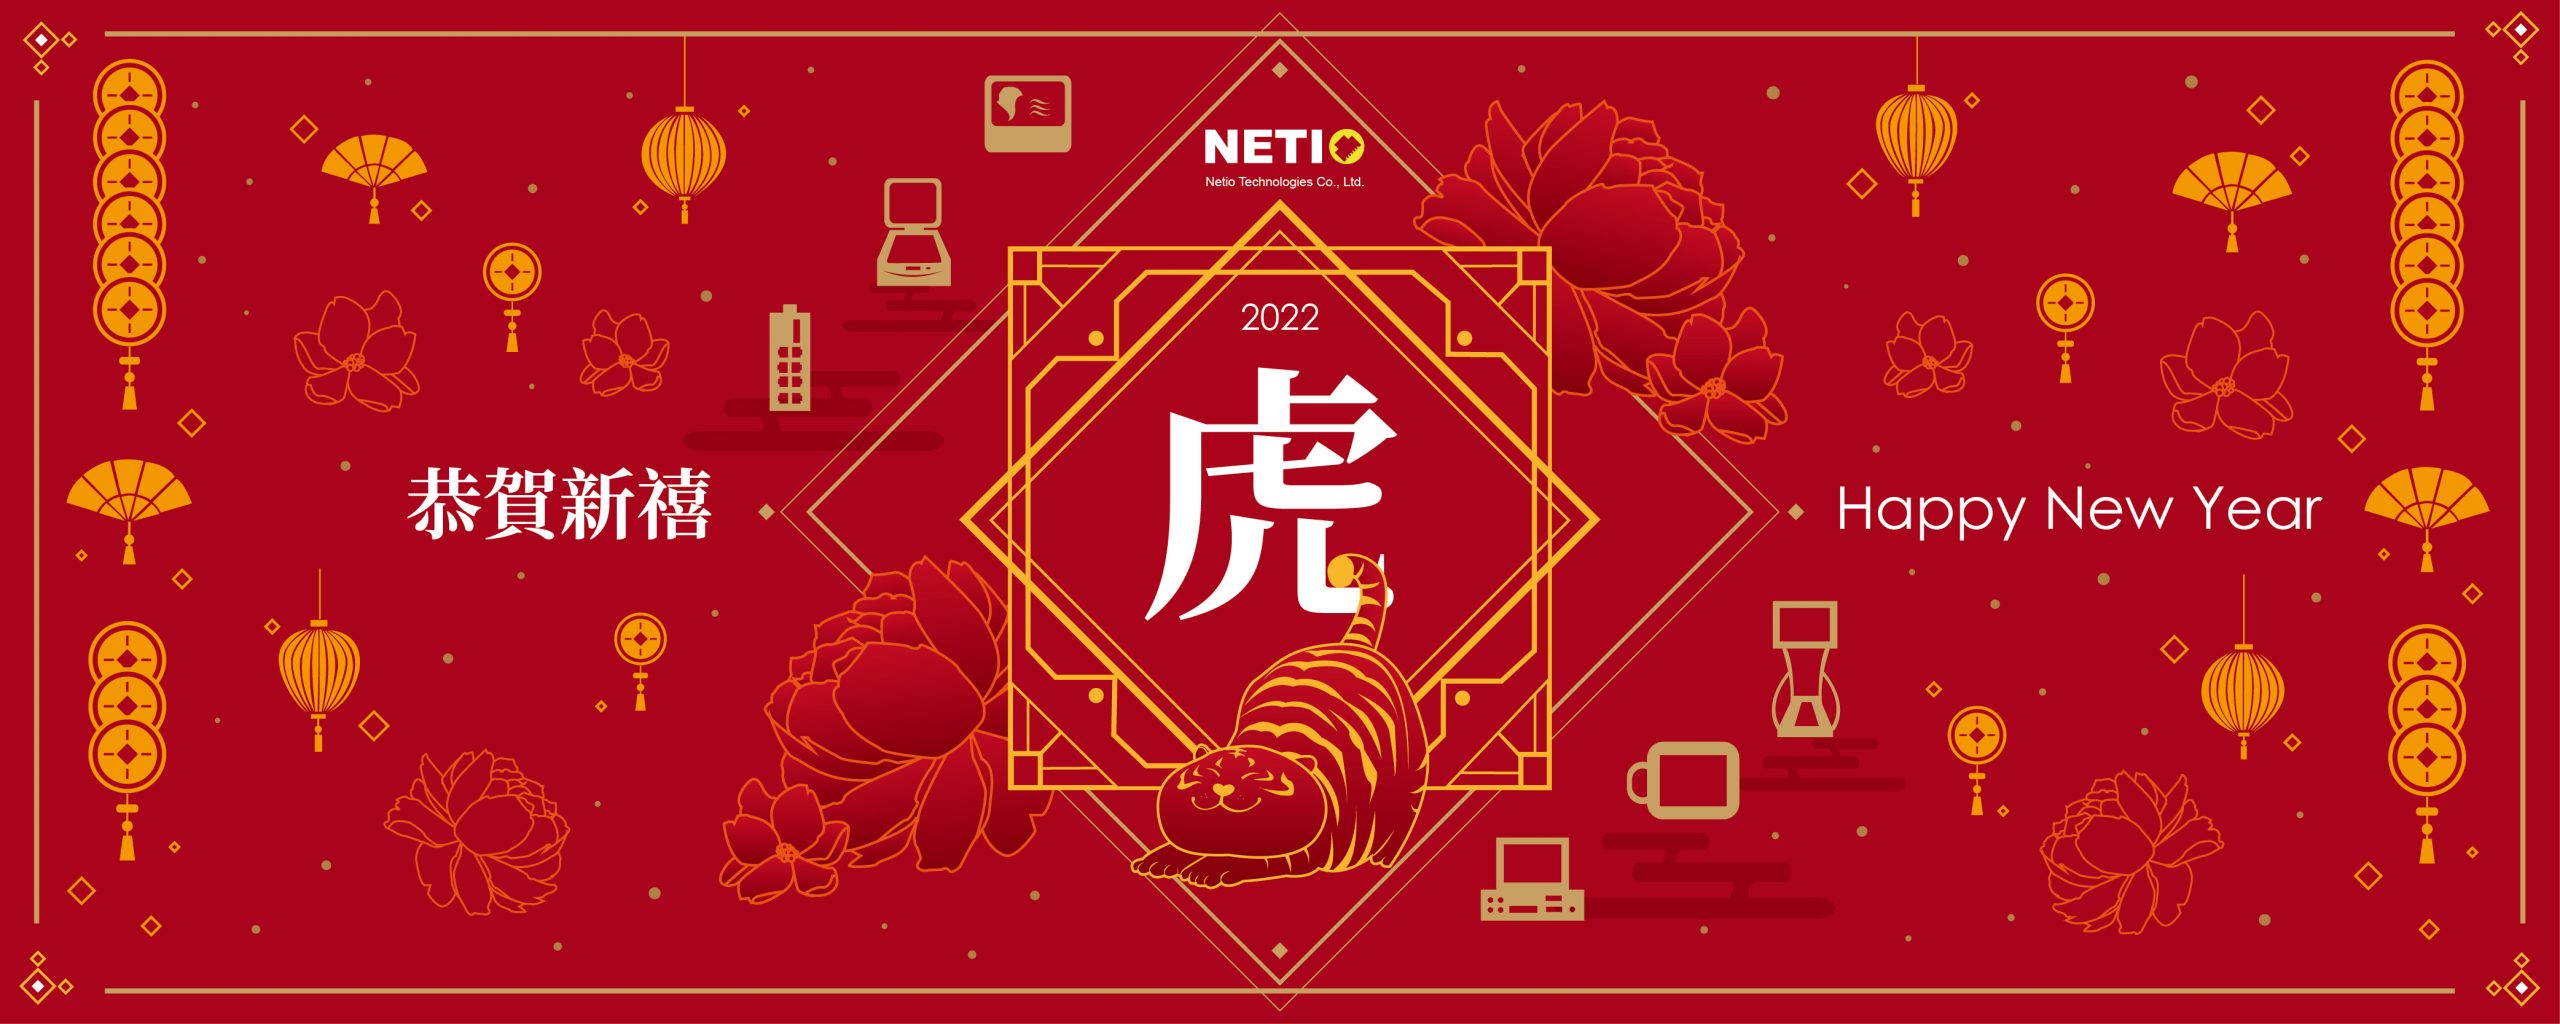 Netiotek-chinese new year(官)-01-01